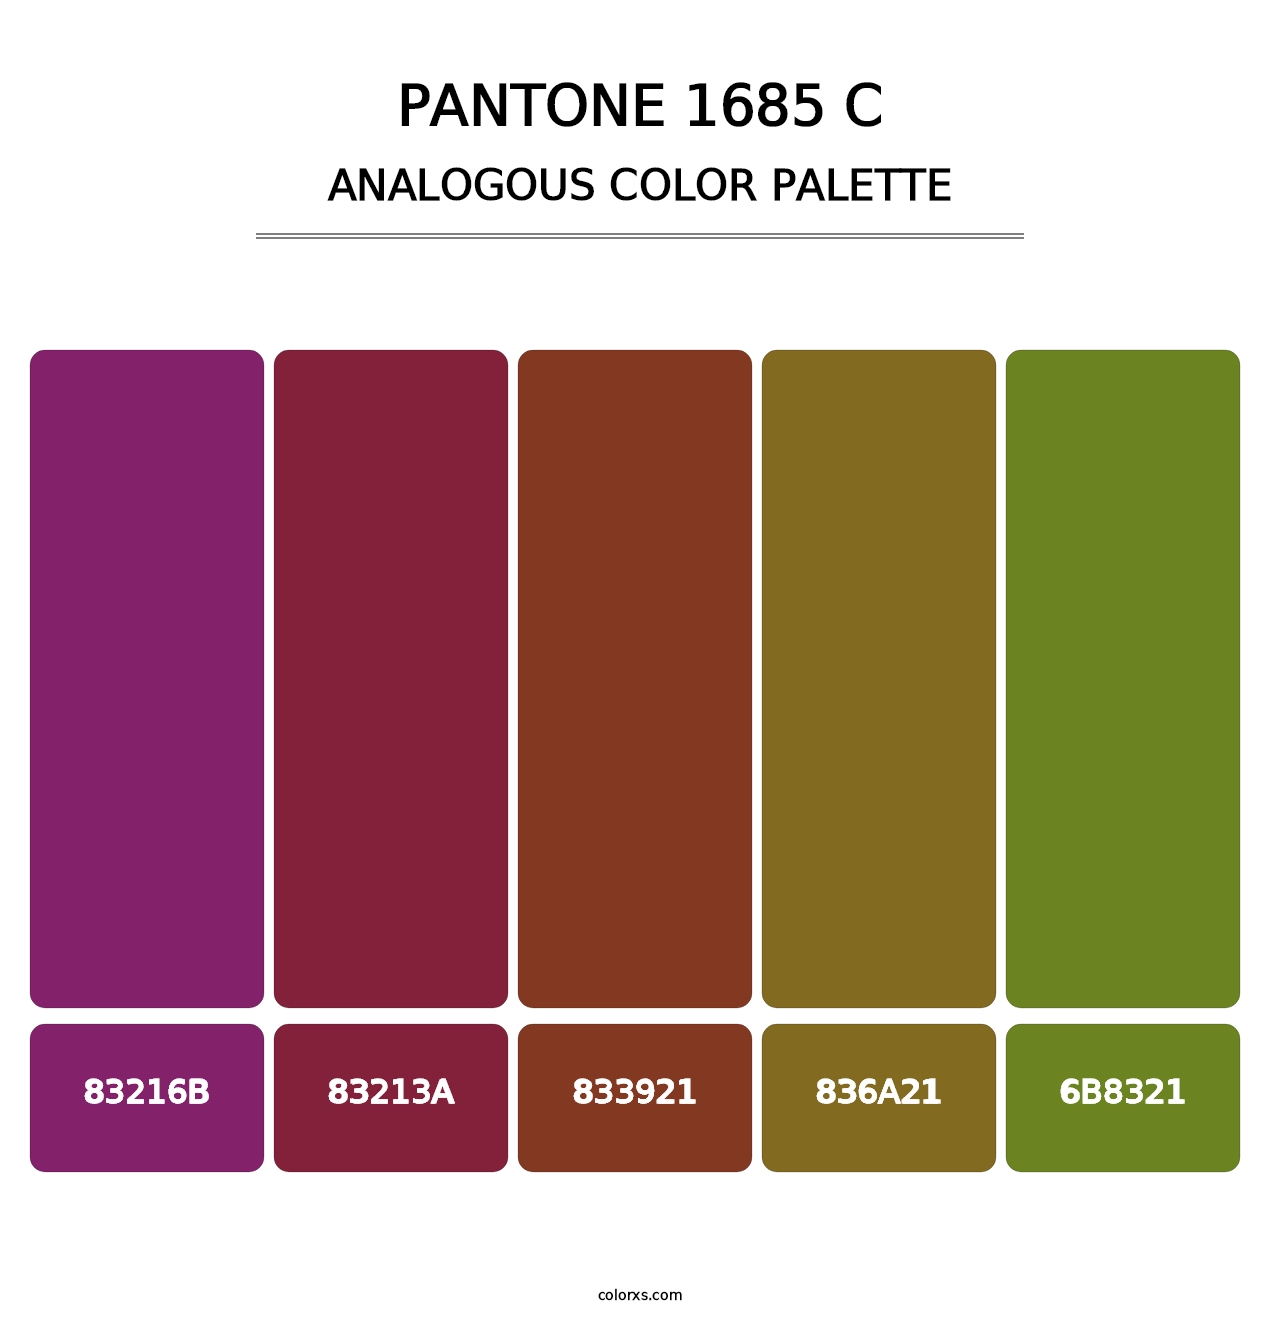 PANTONE 1685 C - Analogous Color Palette